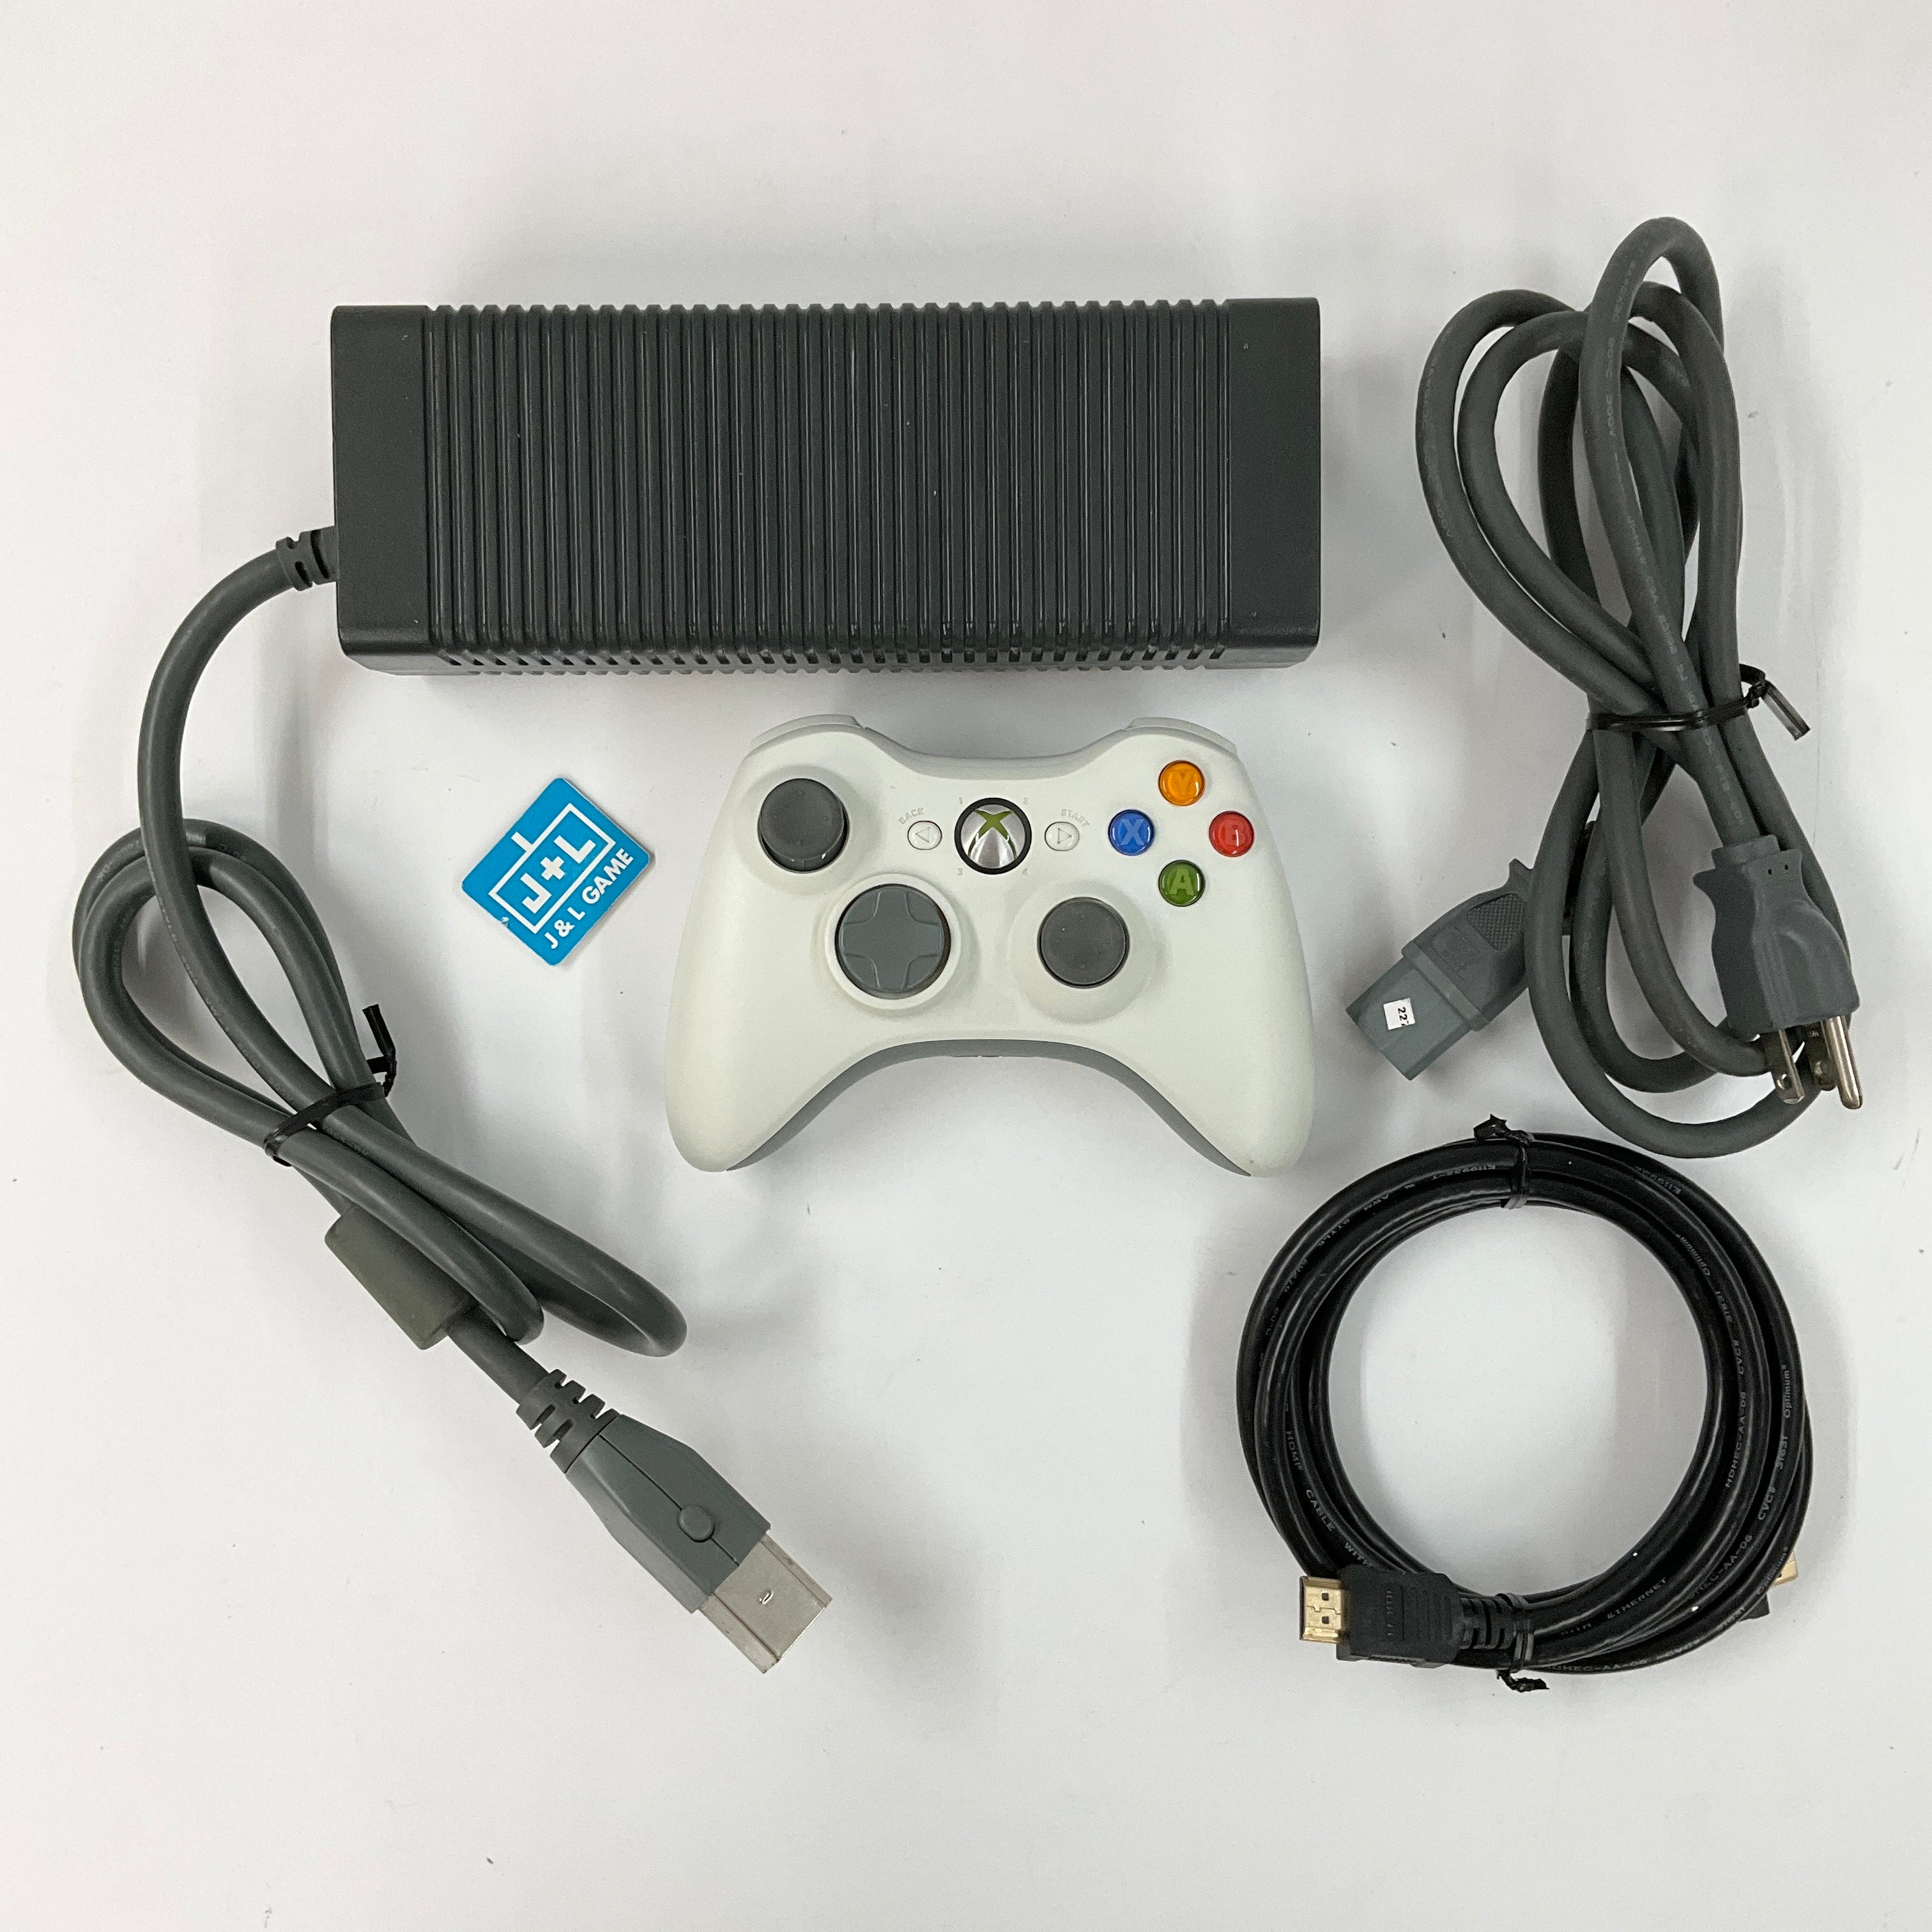 Microsoft Xbox 360 Console (White) - Xbox 360 [Pre-Owned] Consoles Microsoft   